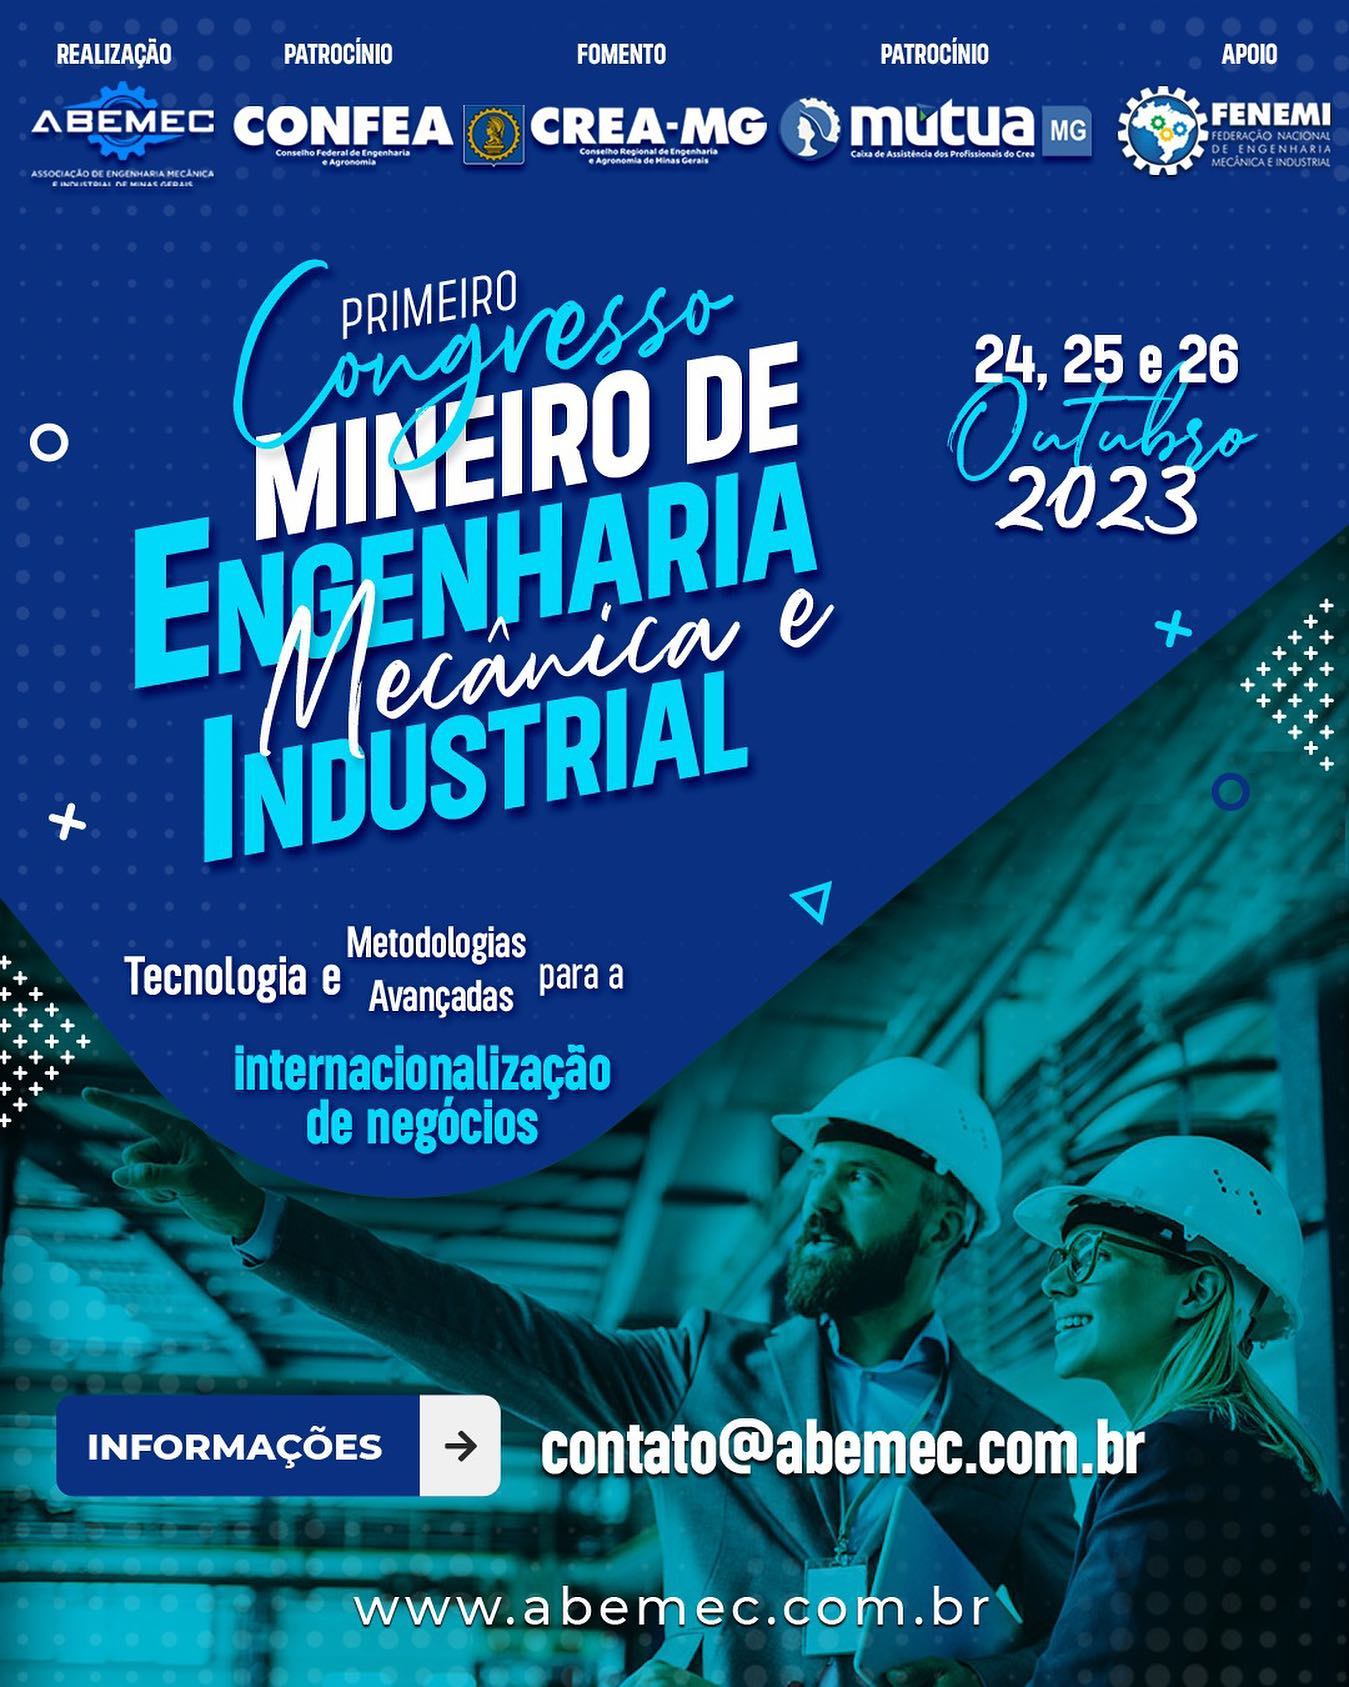 PREPAREM-SE! Vem aí o maior Congresso de Engenharia Mecânica e Industrial em Minas Gerais voltado para a Internacionalização de Negócios! Reservem a data na agenda! Para maiores informações: contato@abemec.com.br #abemecmg #confea #fenemi #creamg #mutuamg